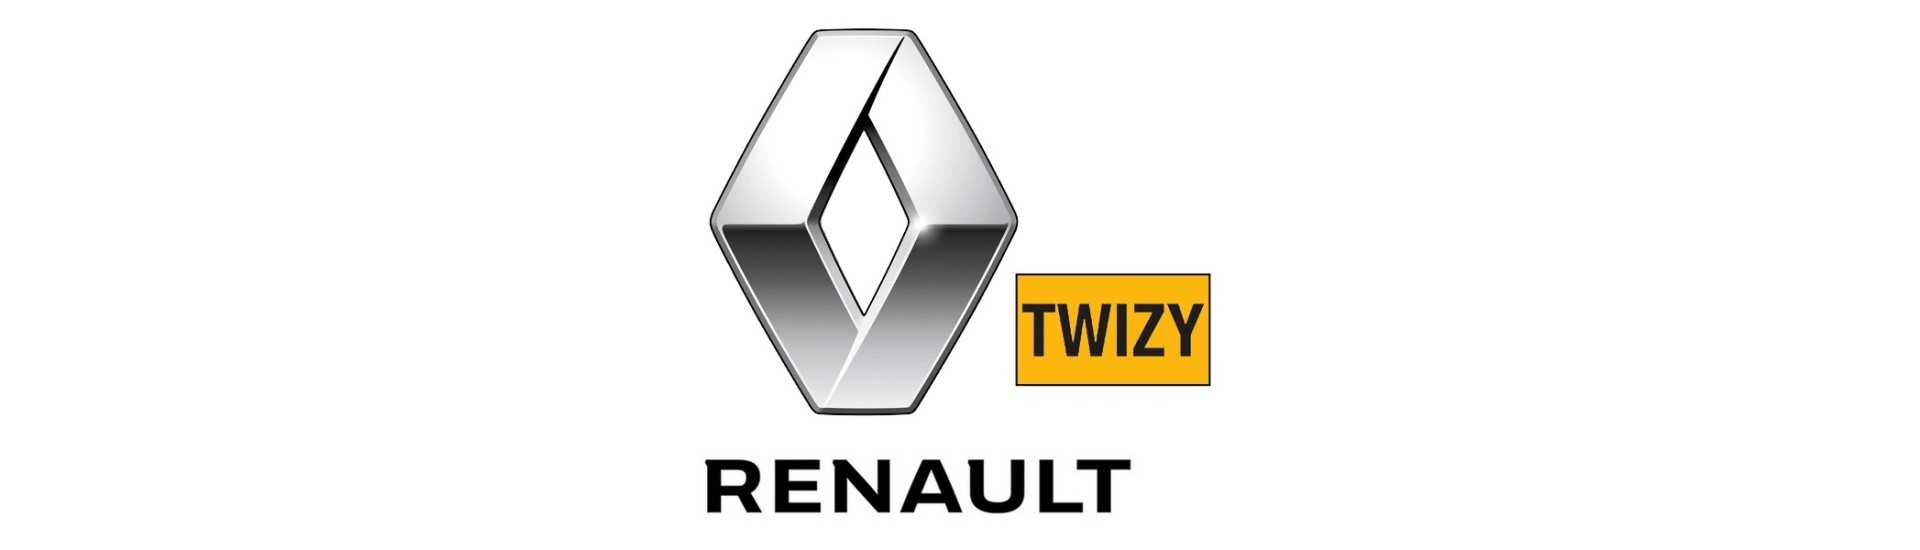 Contacteur de stop au meilleur prix pour voiture sans permis Renault